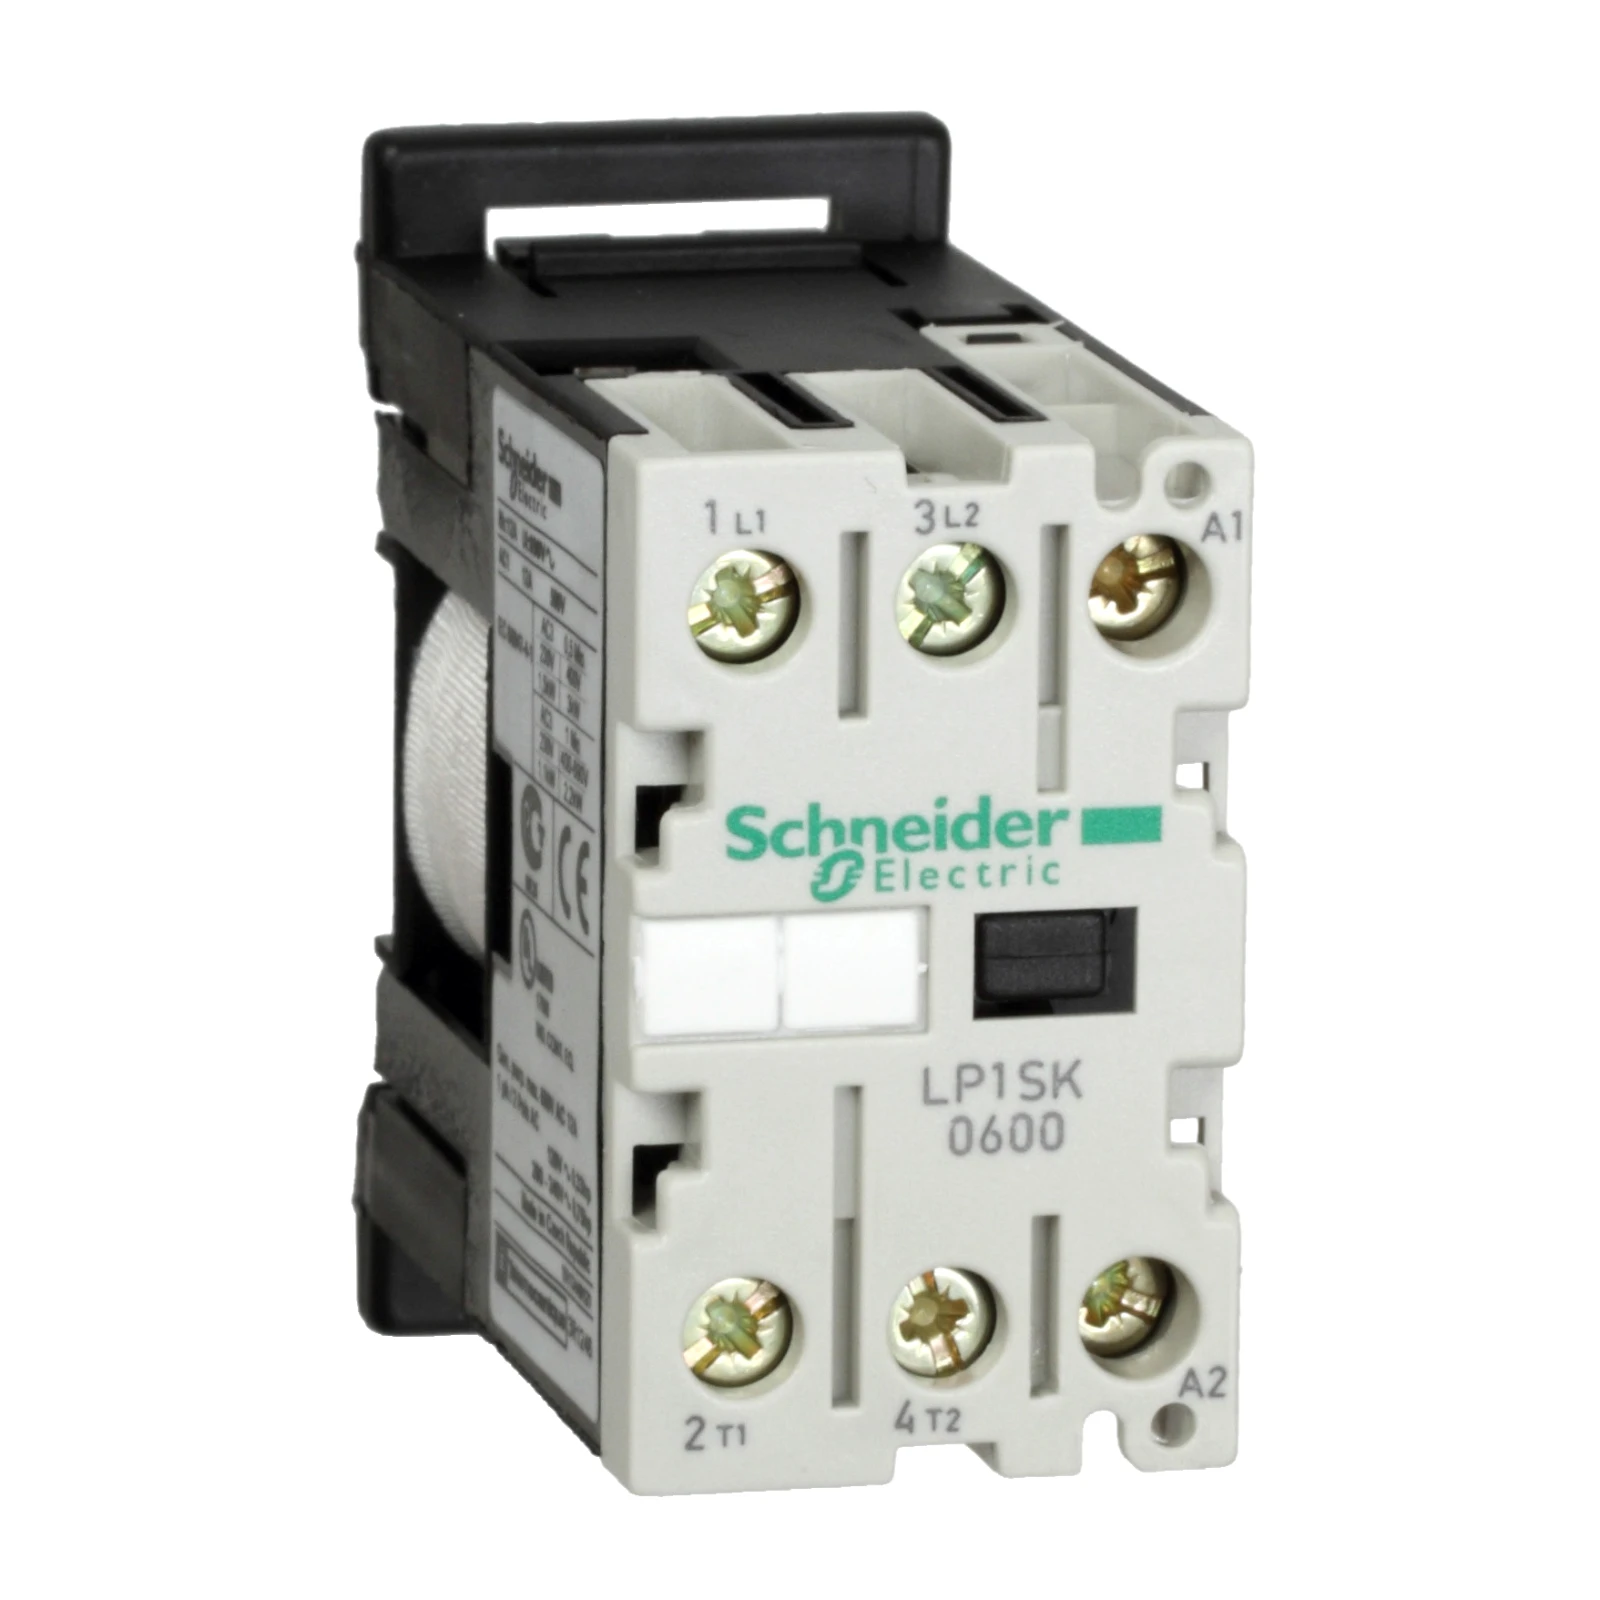 1042843 - Schneider Electric LP1SK0600BD